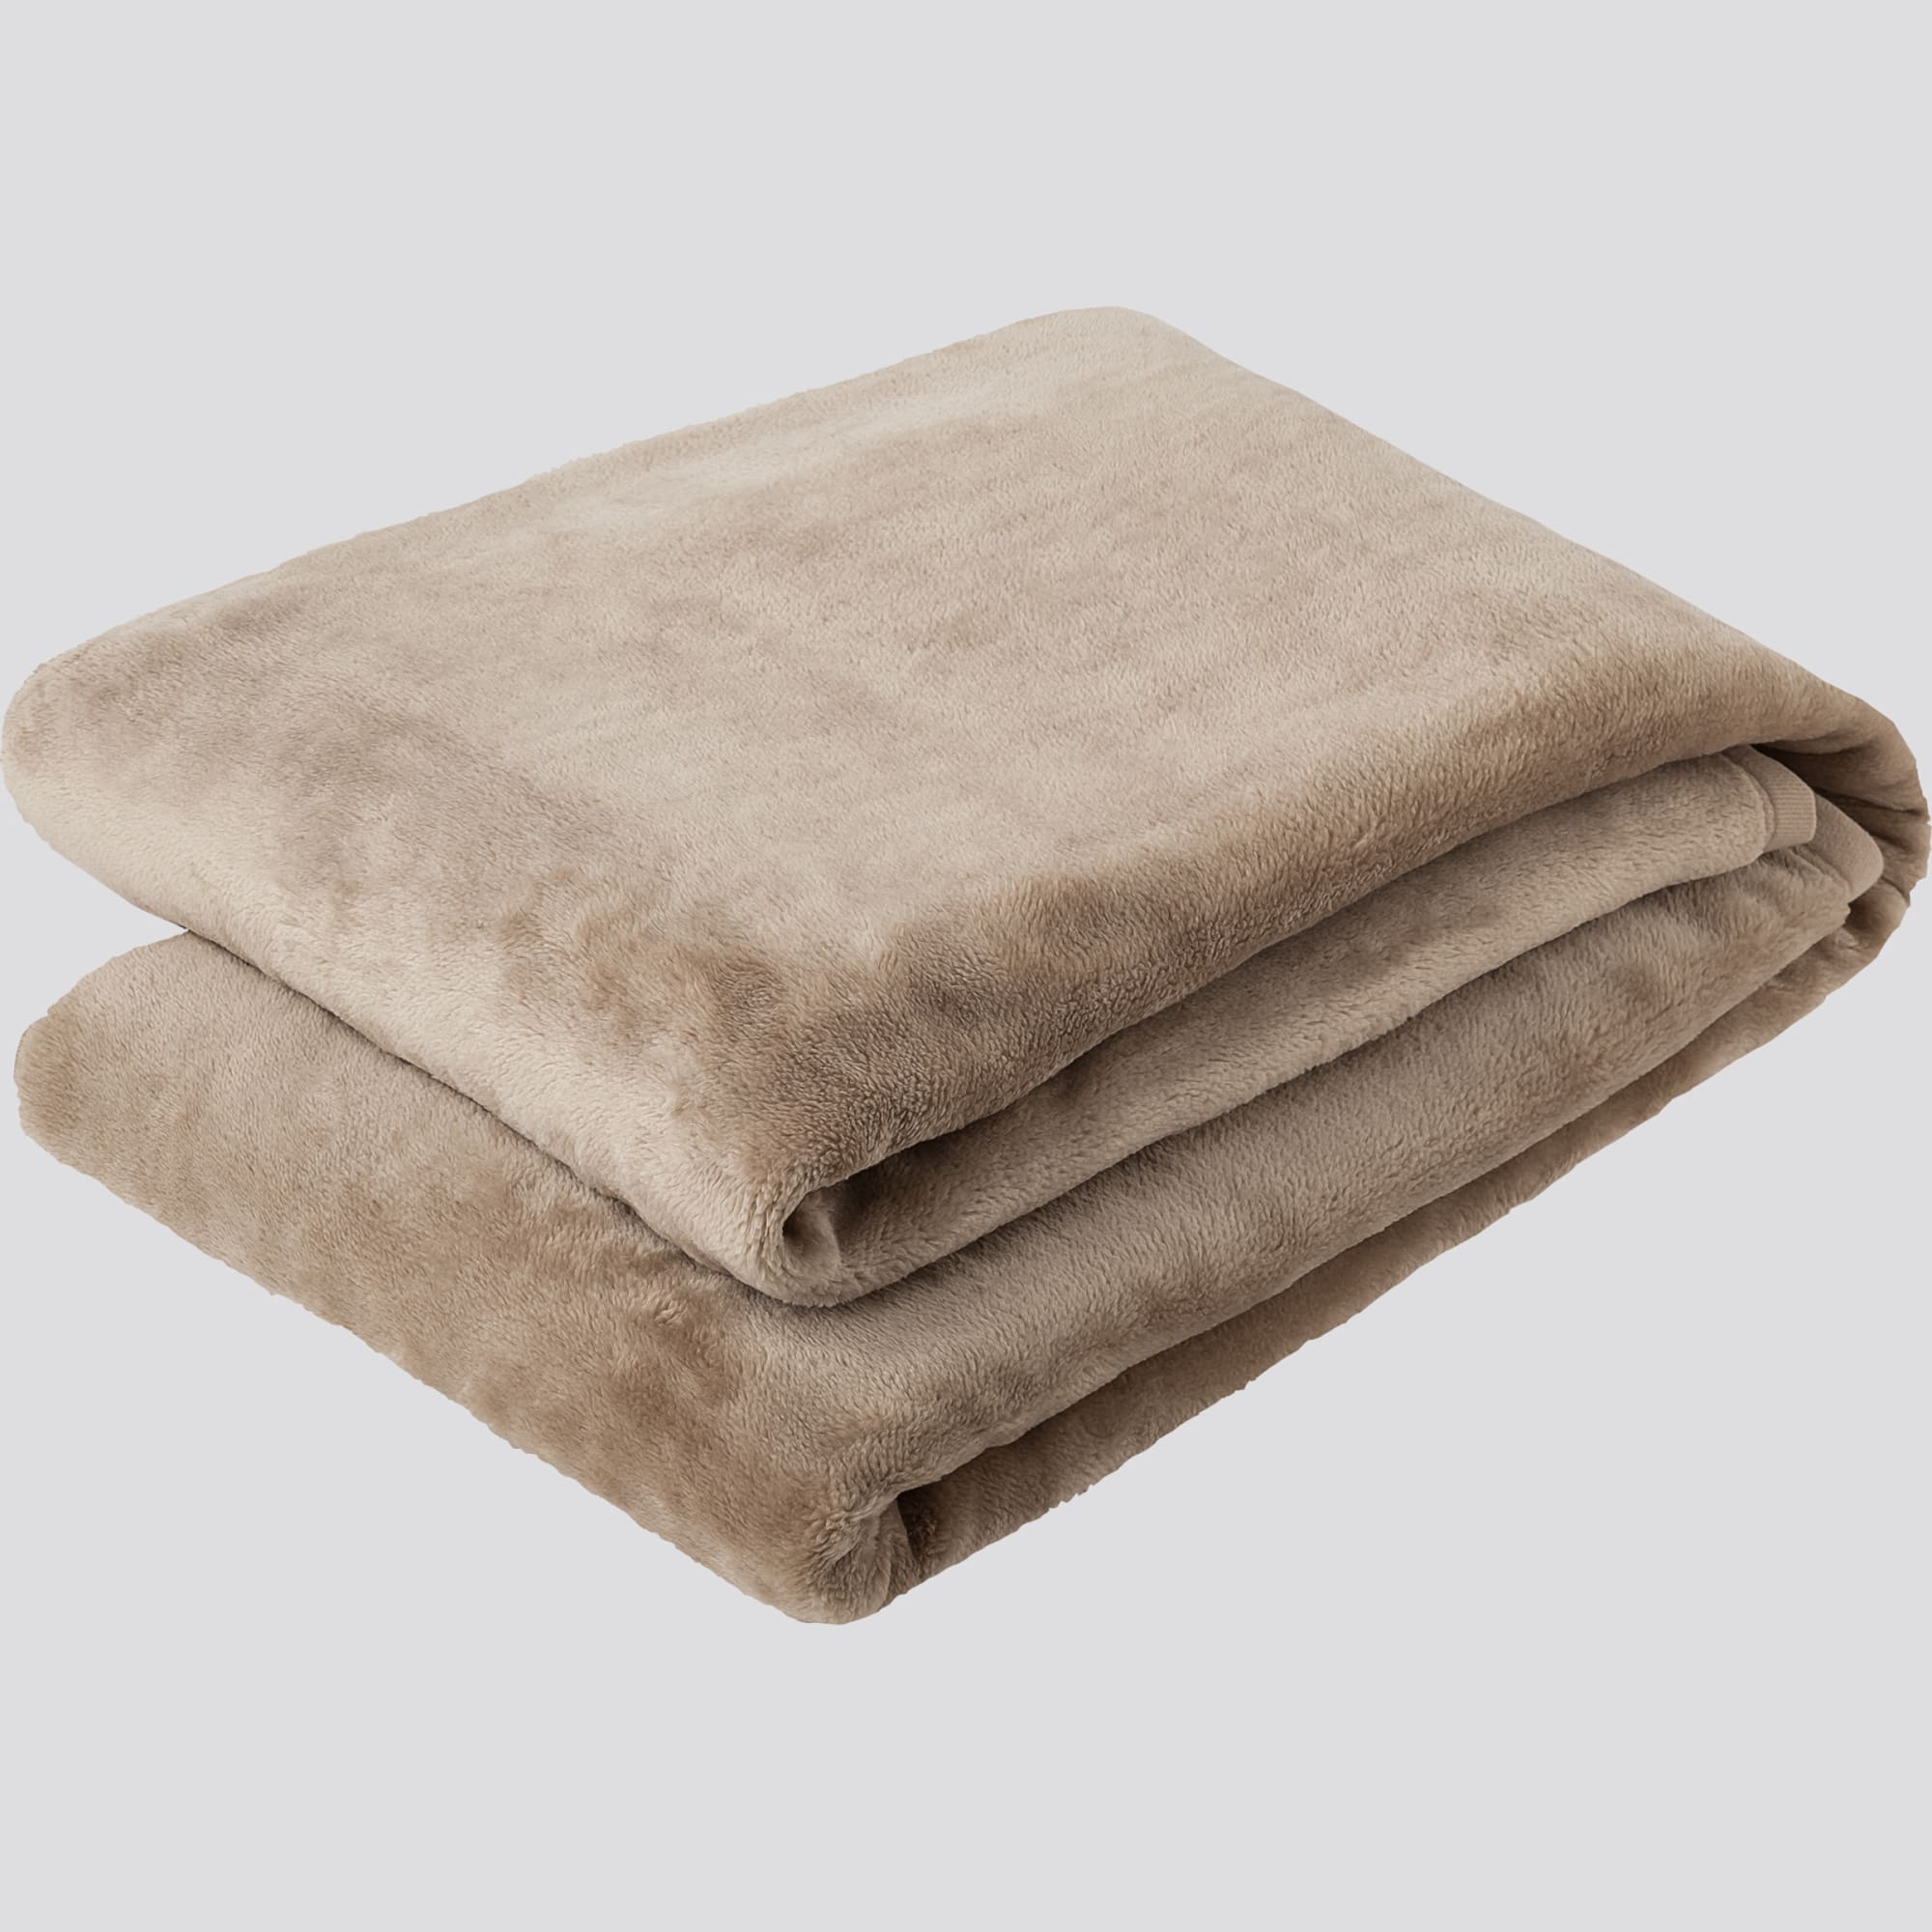 ユニクロが「ヒートテック毛布」 の店頭販売を開始、シングルとダブルの2サイズ展開